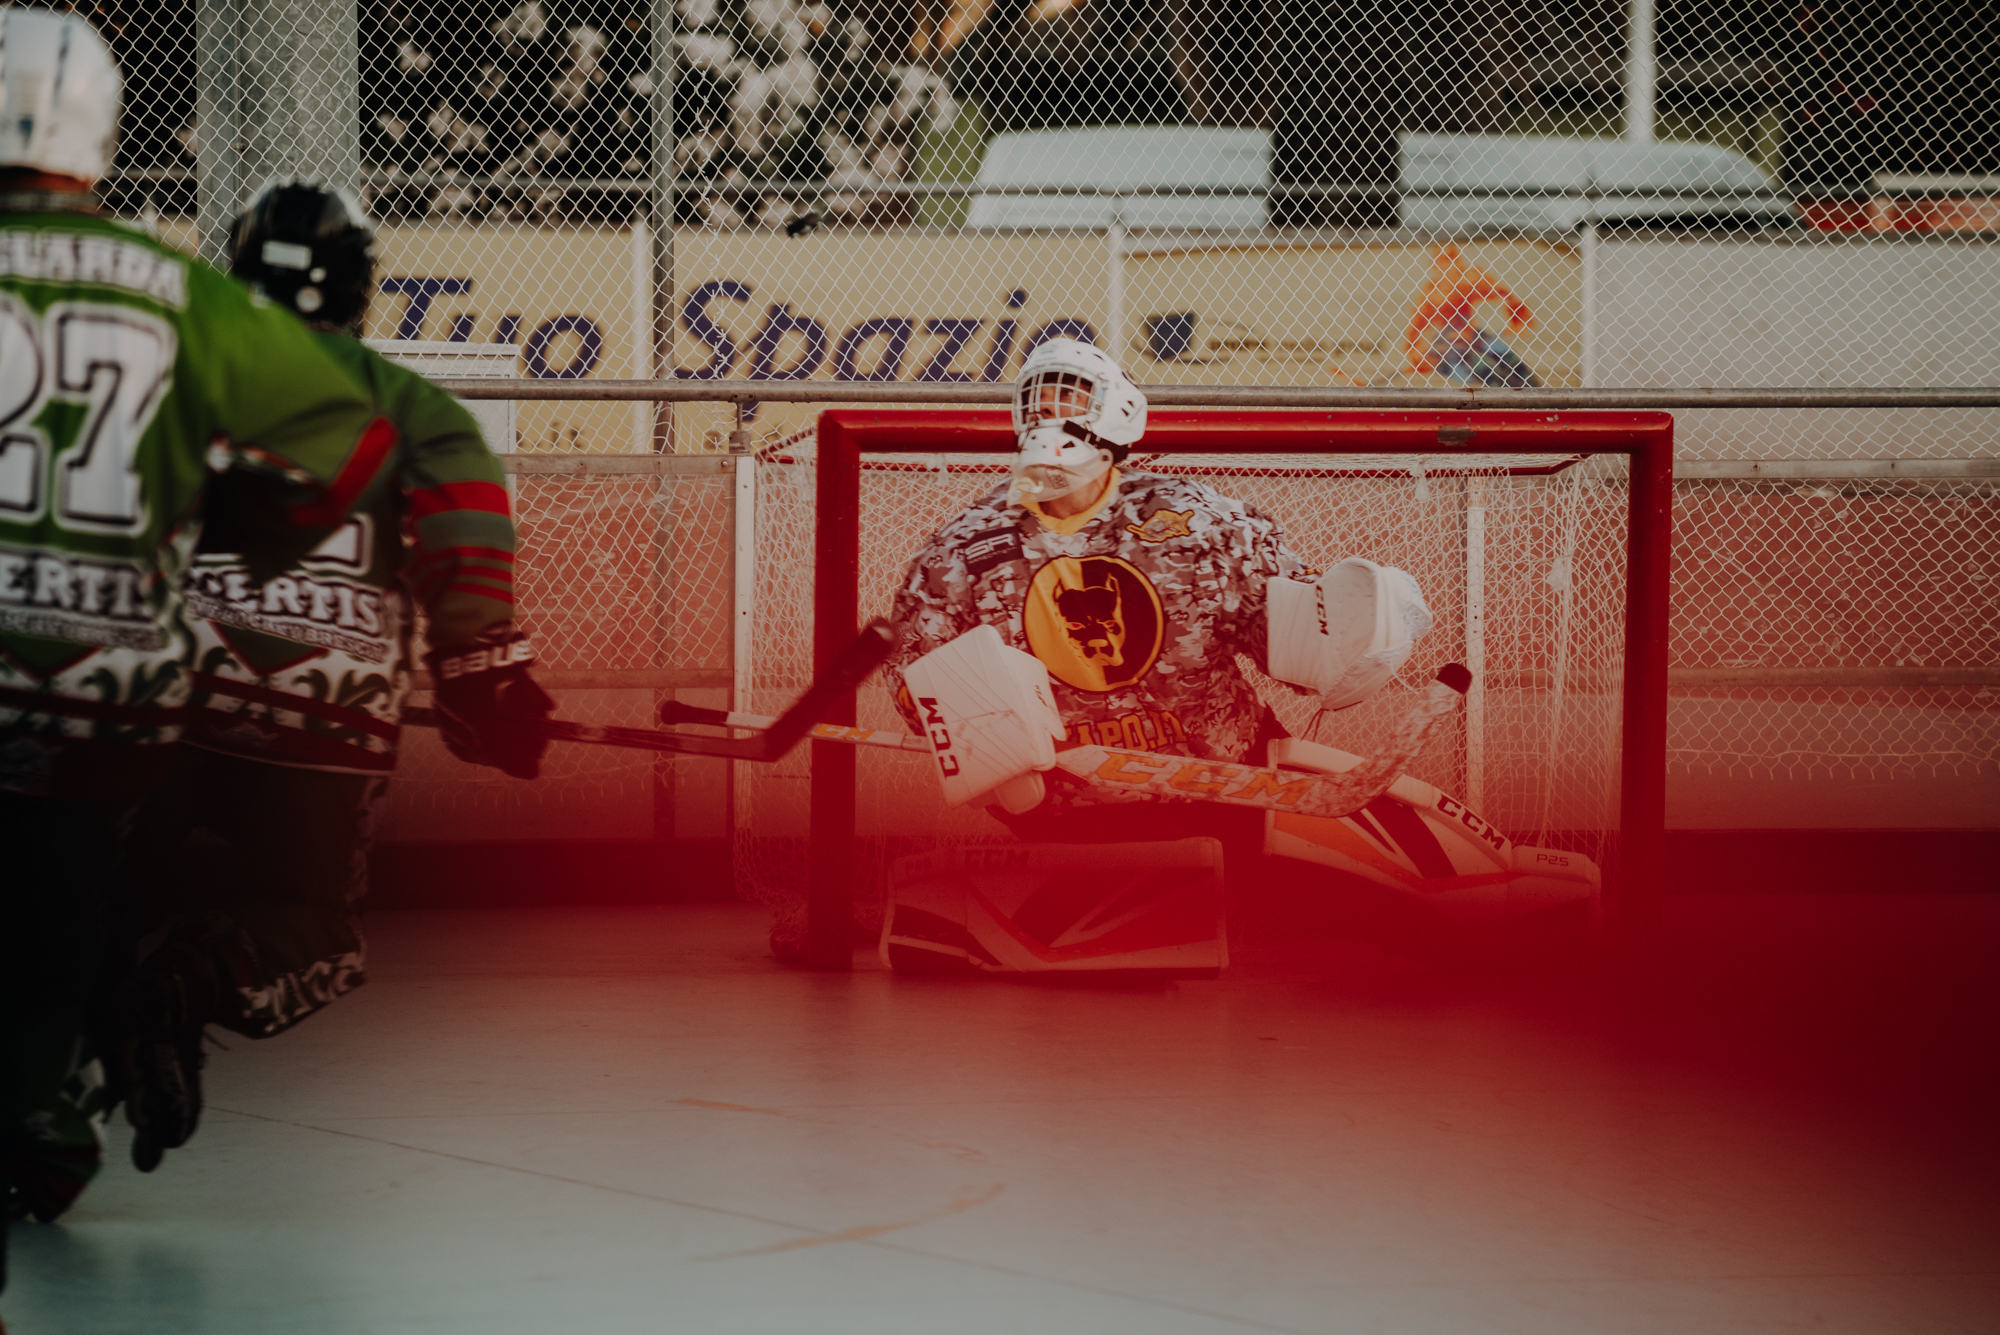 Rita Foldi photo, inline hockey, mammuth roma, hockey mammuth, hockey roma, inline hockey roma, inline roma, sports photography, sports